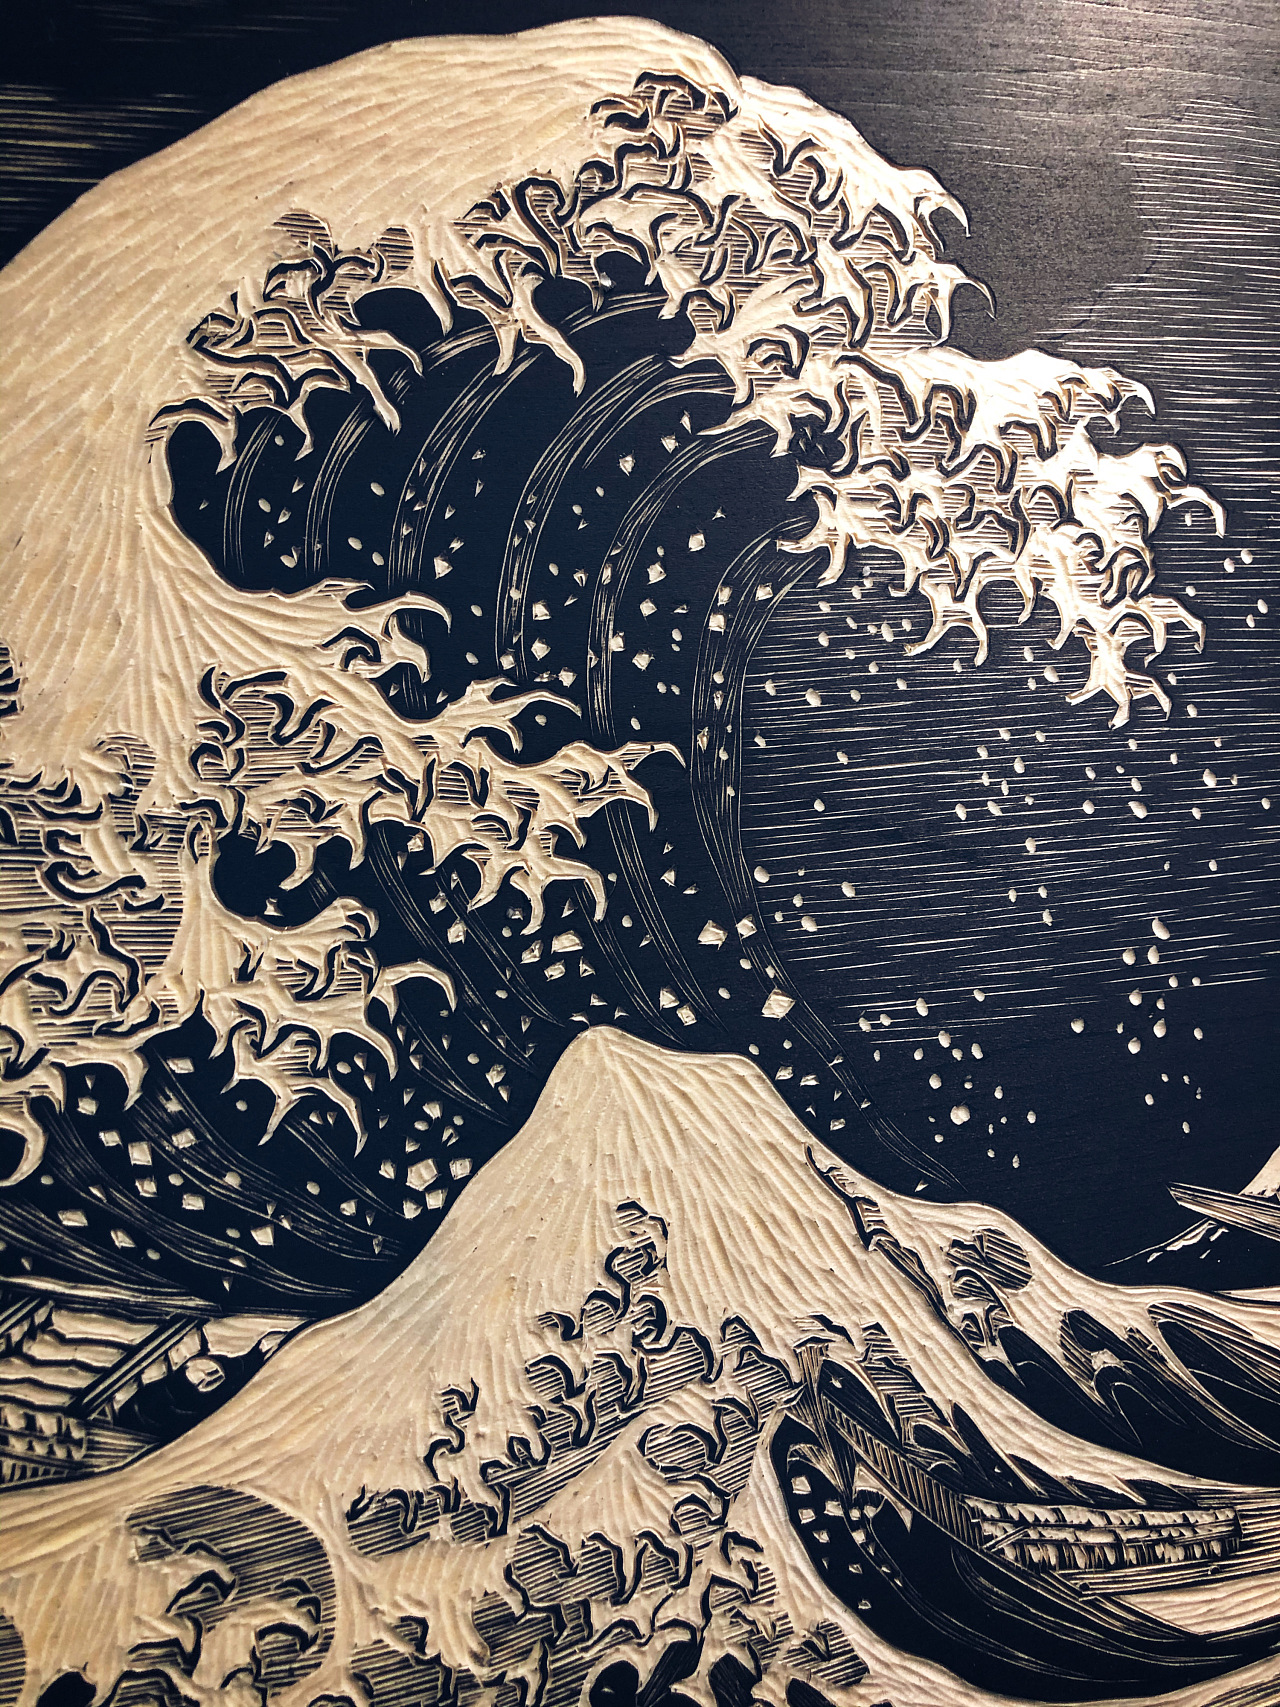 神奈川冲浪里竖屏壁纸图片